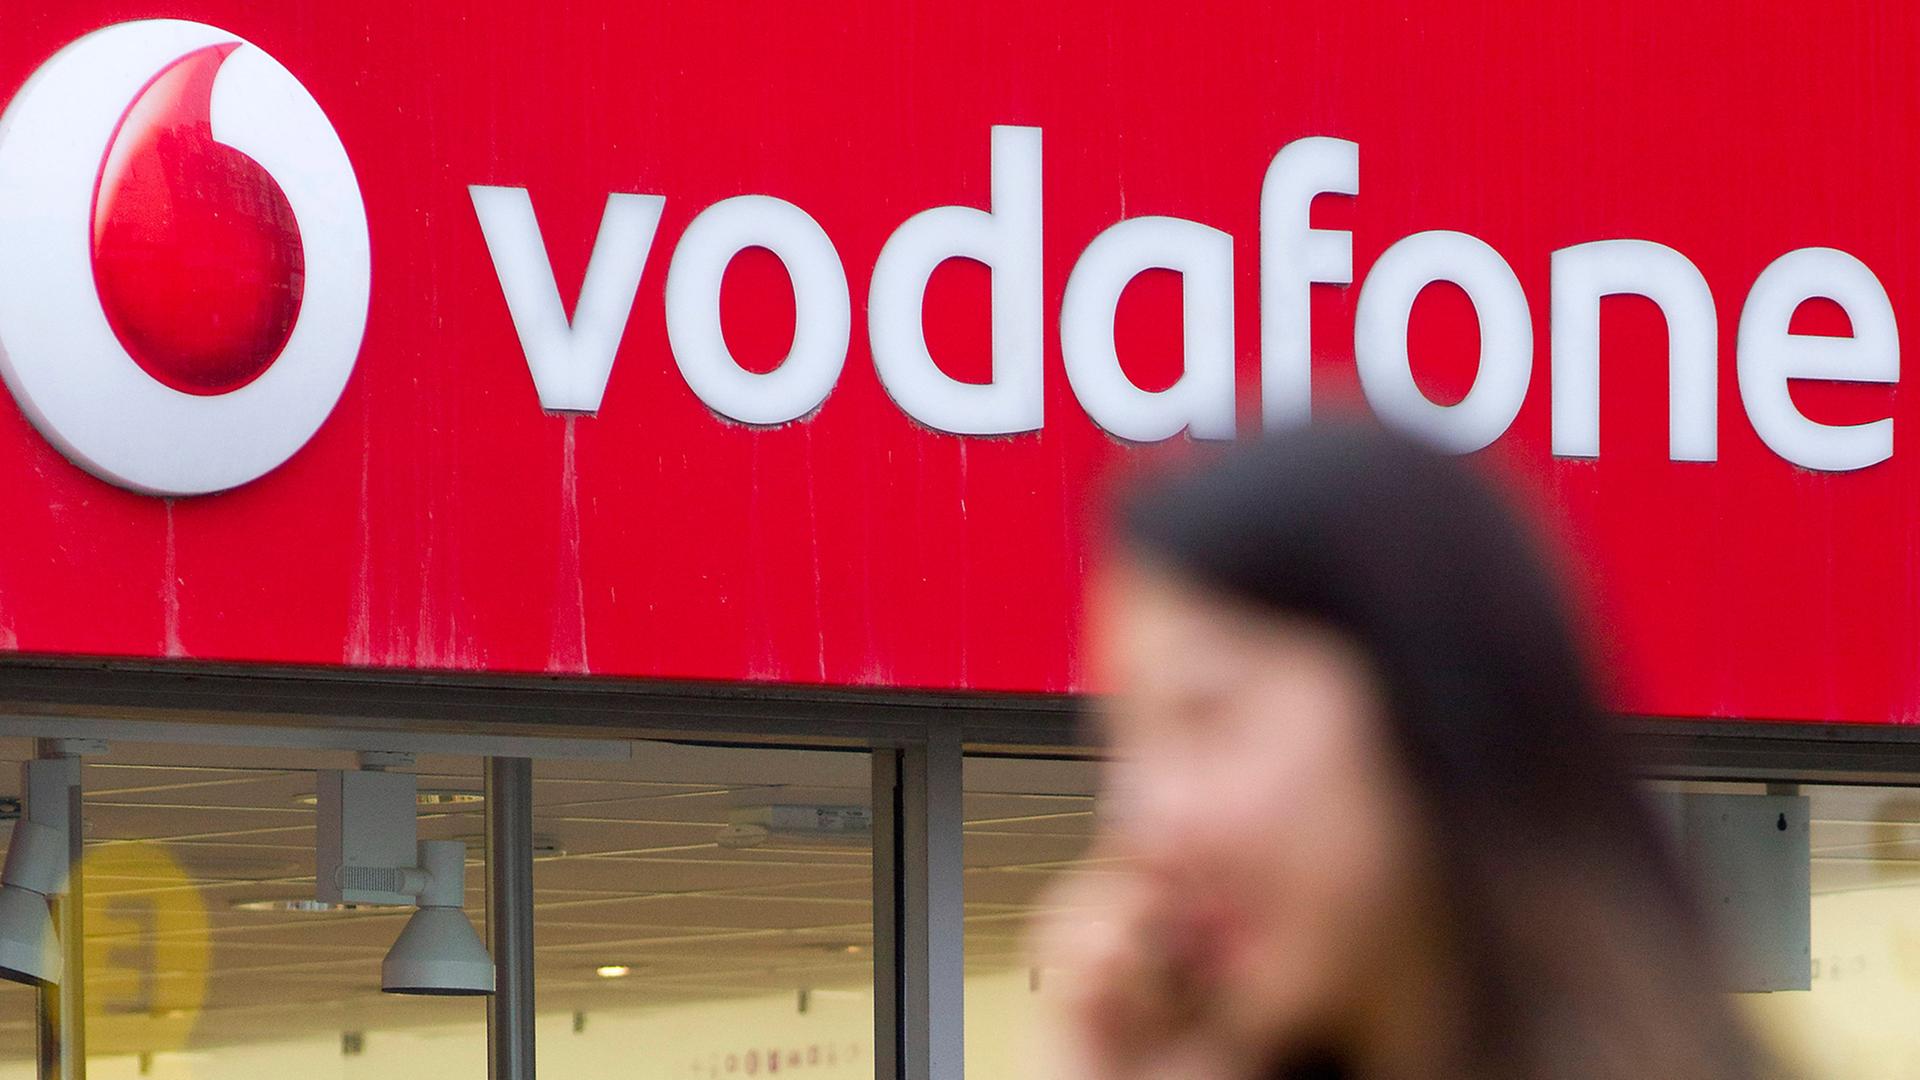 Eien Frau geht telefonierend an einem Vodafone-Shop in London vorbei.